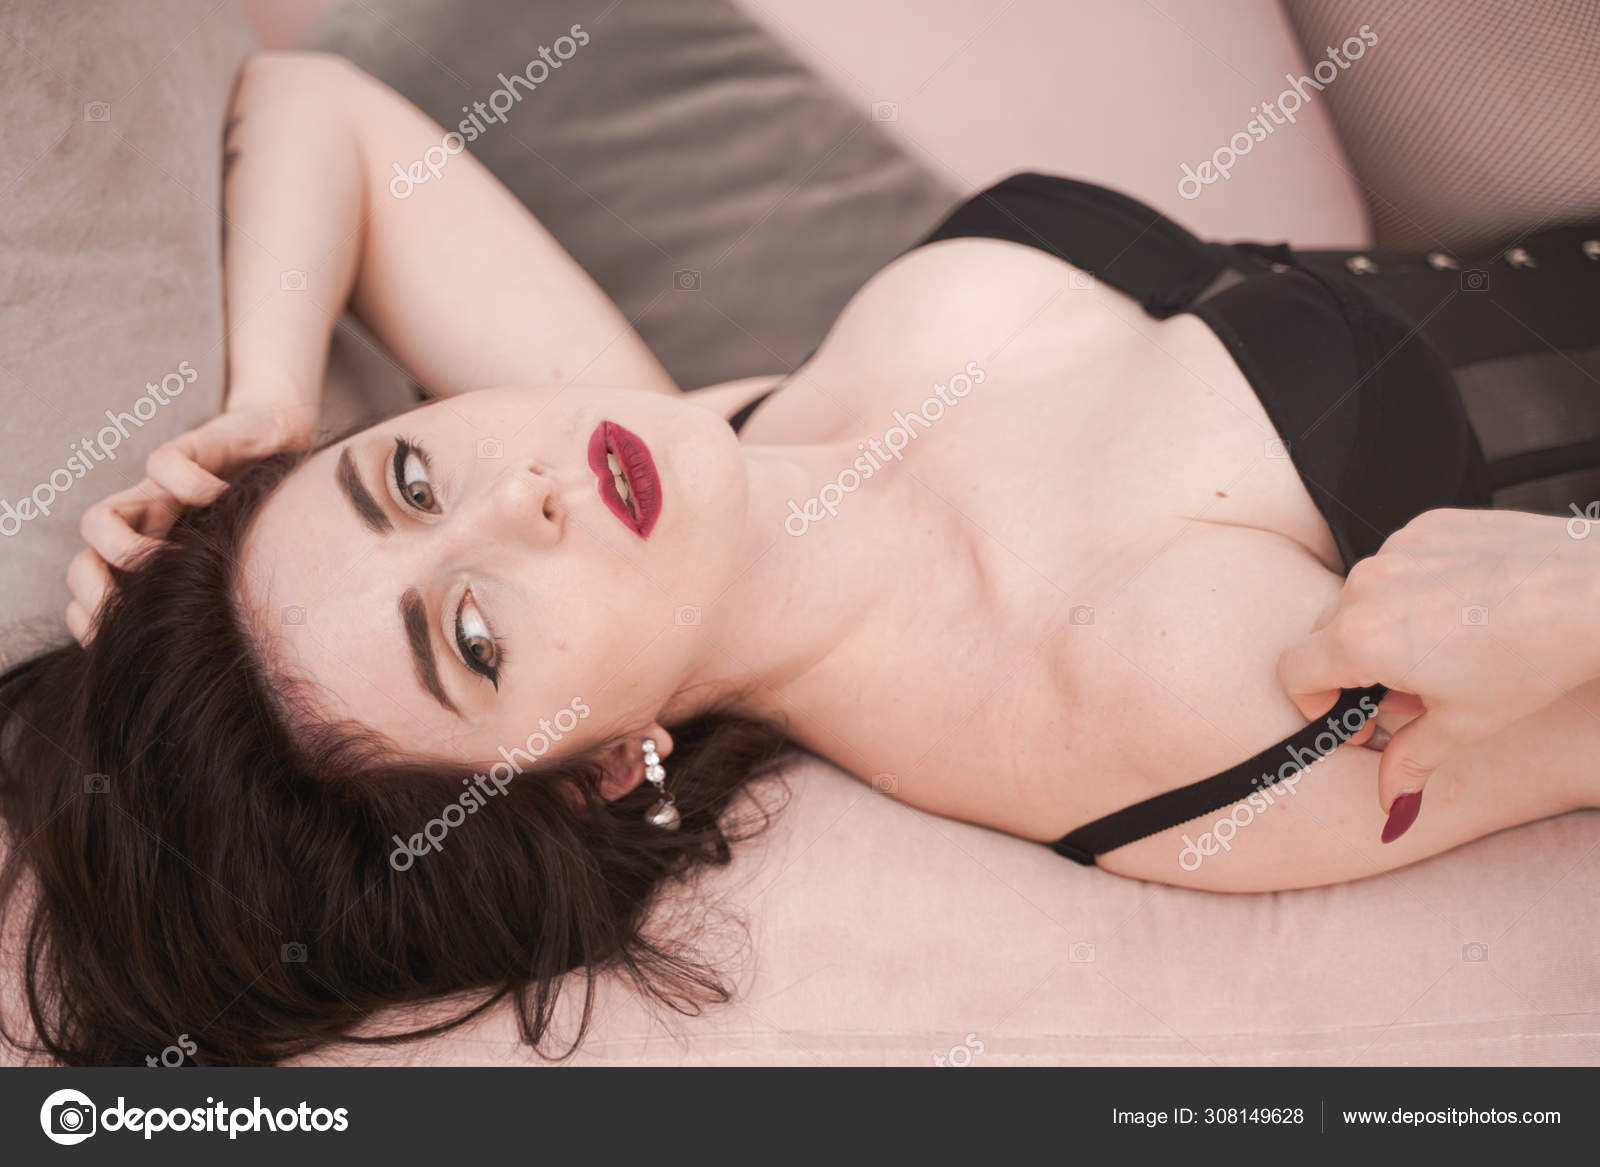 Quente bonita pin up mulher no erótico lingerie roupa interior posando  sozinho no estúdio branco fundo quarto fotos, imagens de © agnadevi  #308149628